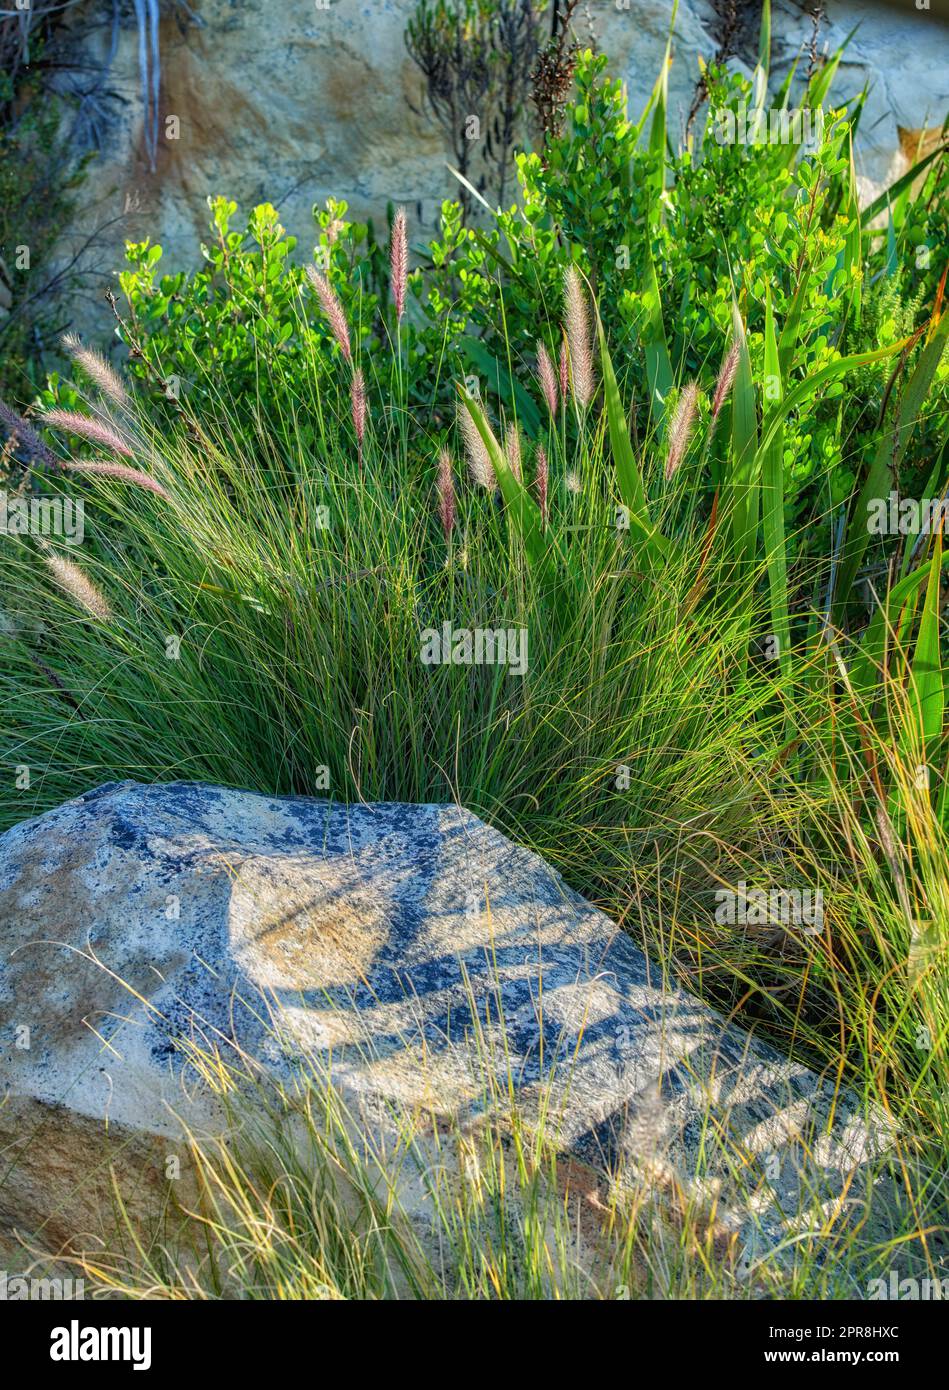 Nahaufnahme von Crimson Brunnengras auf einem Berg in Westkap, Südafrika. Üppig grüne Büsche und Unkraut wachsen in Harmonie an einem friedlichen, sonnigen Morgen. Ruhige Schönheit in der Natur auf einem ruhigen Hügel Stockfoto